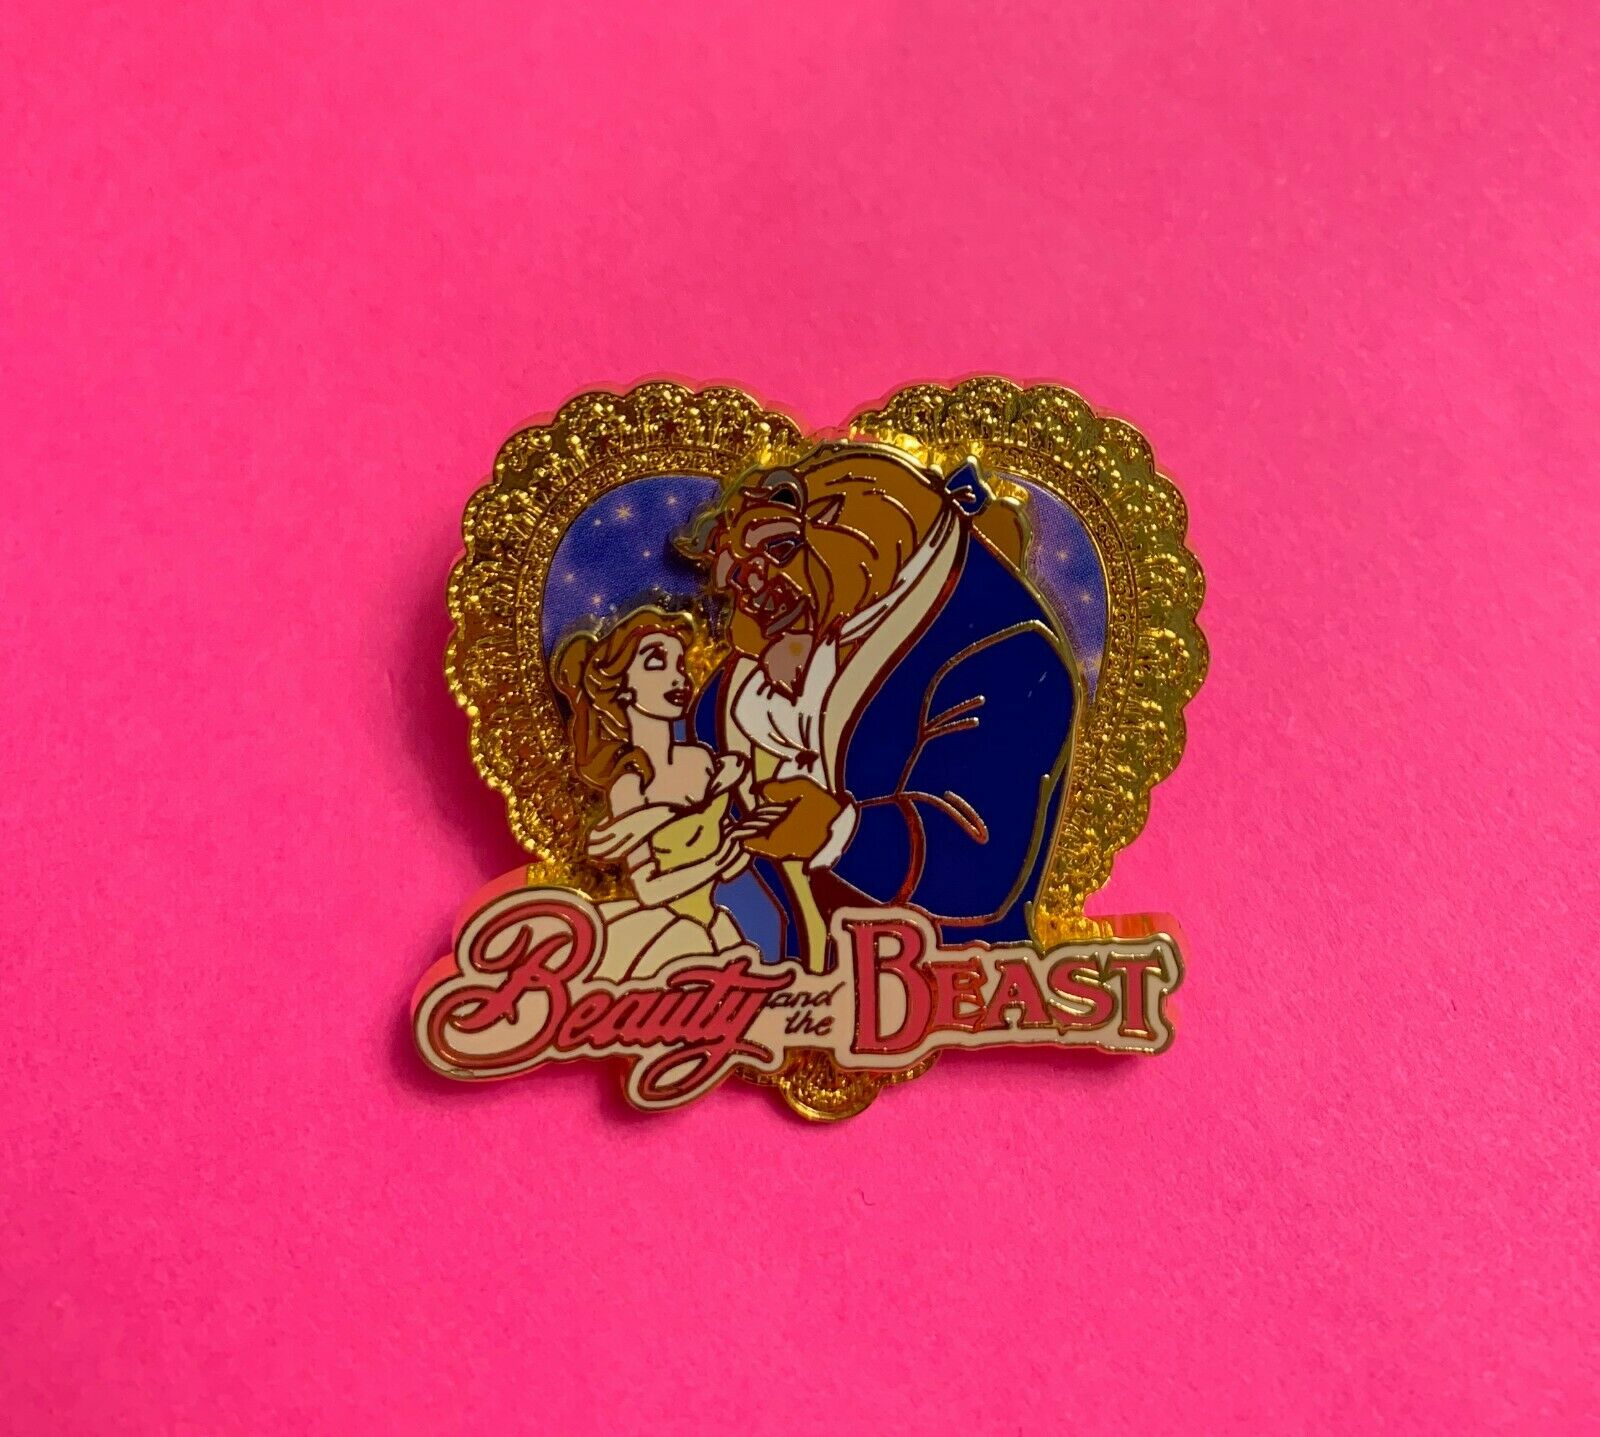 Beauty & The Beast Dancing Inside Gold Heart, 2001 Jds Couple Series Disney Pin